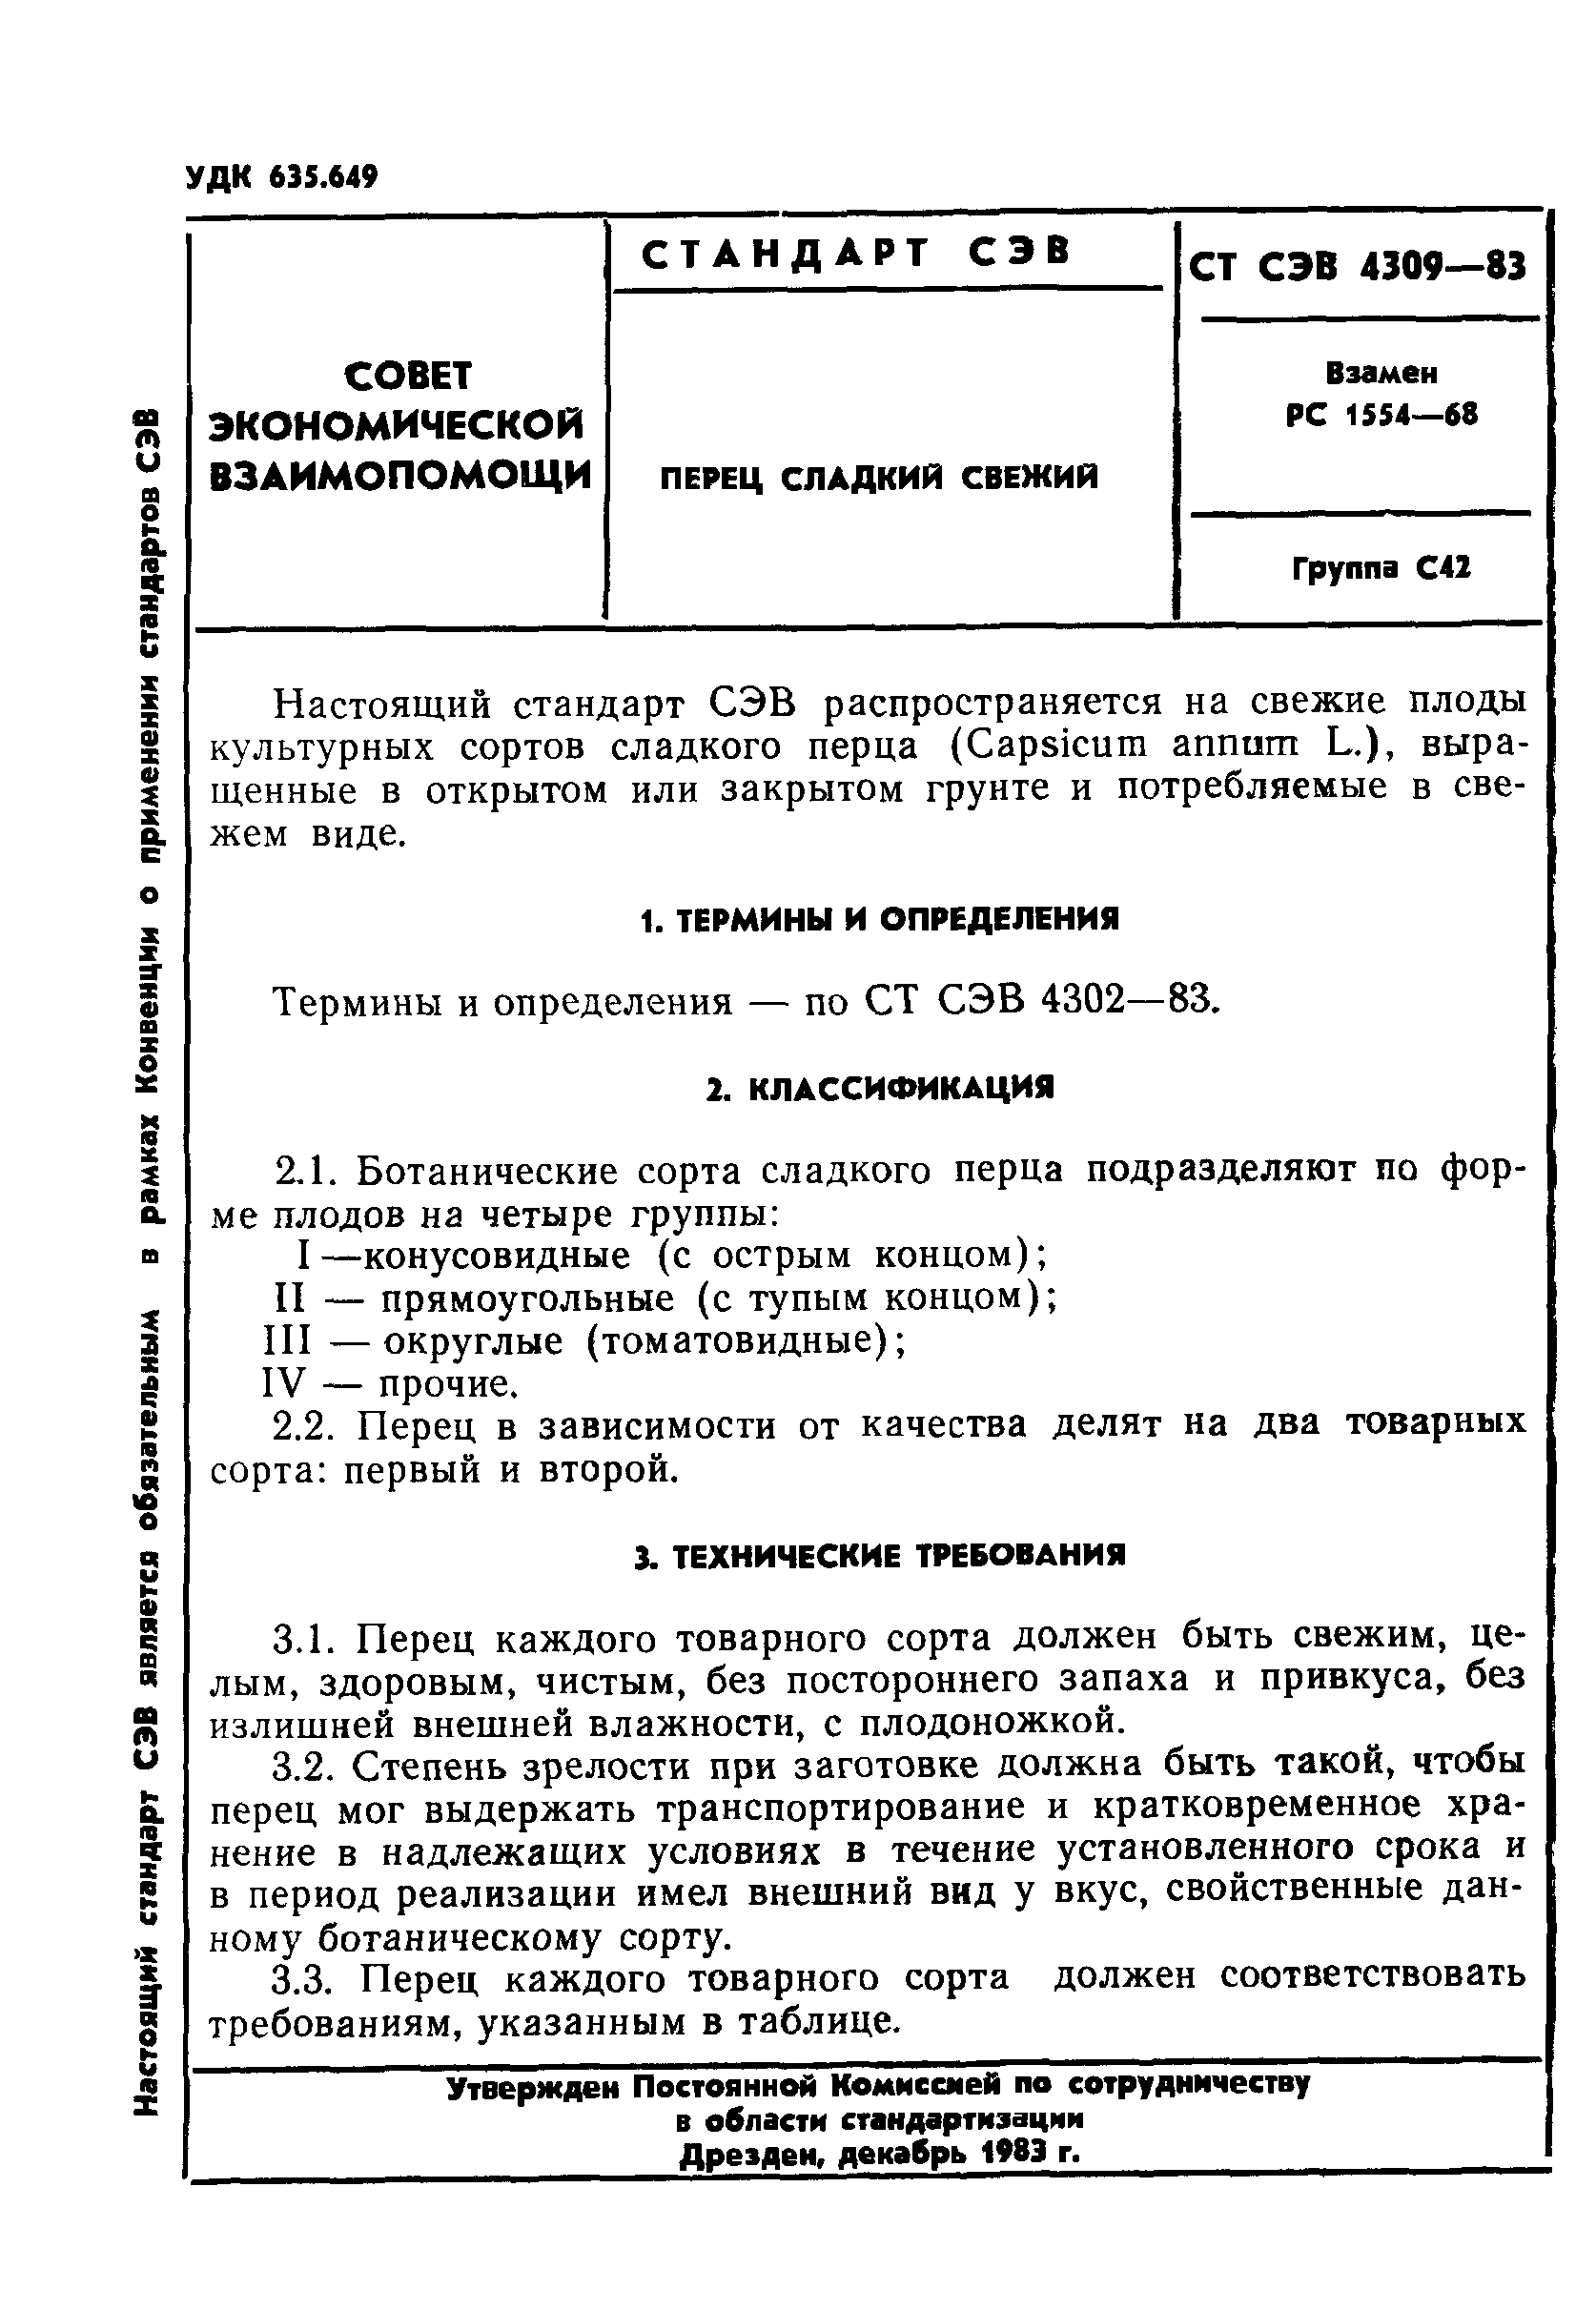 СТ СЭВ 4309-83